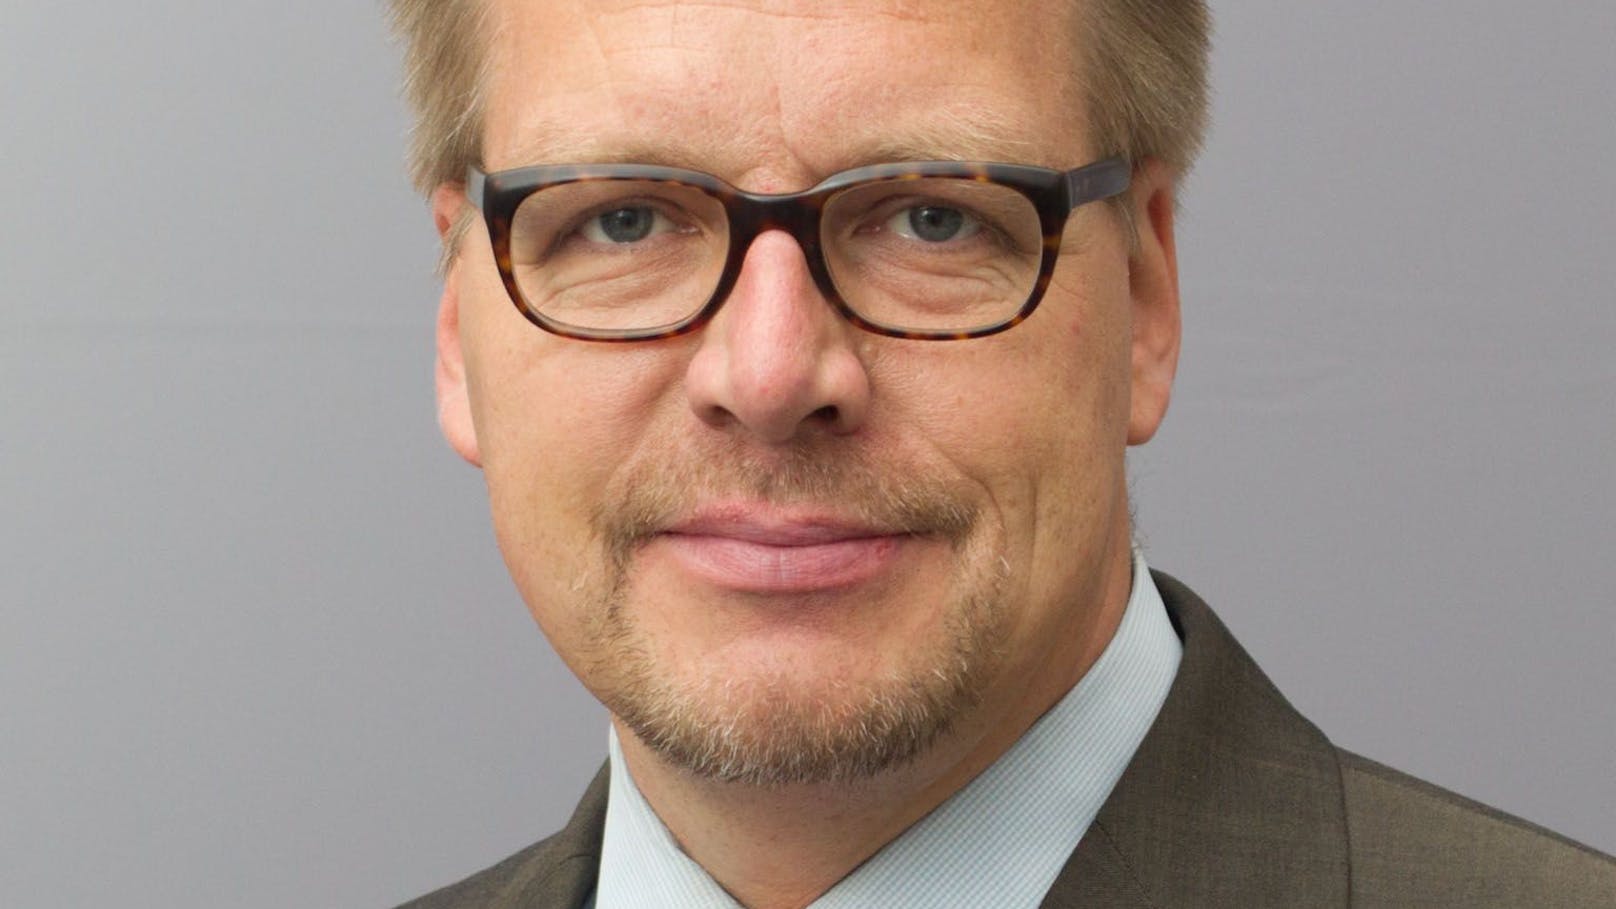 PD Dr. habil. Markus Kaim forscht in Berlin zu internationaler Sicherheits- & Verteidigungspolitik.